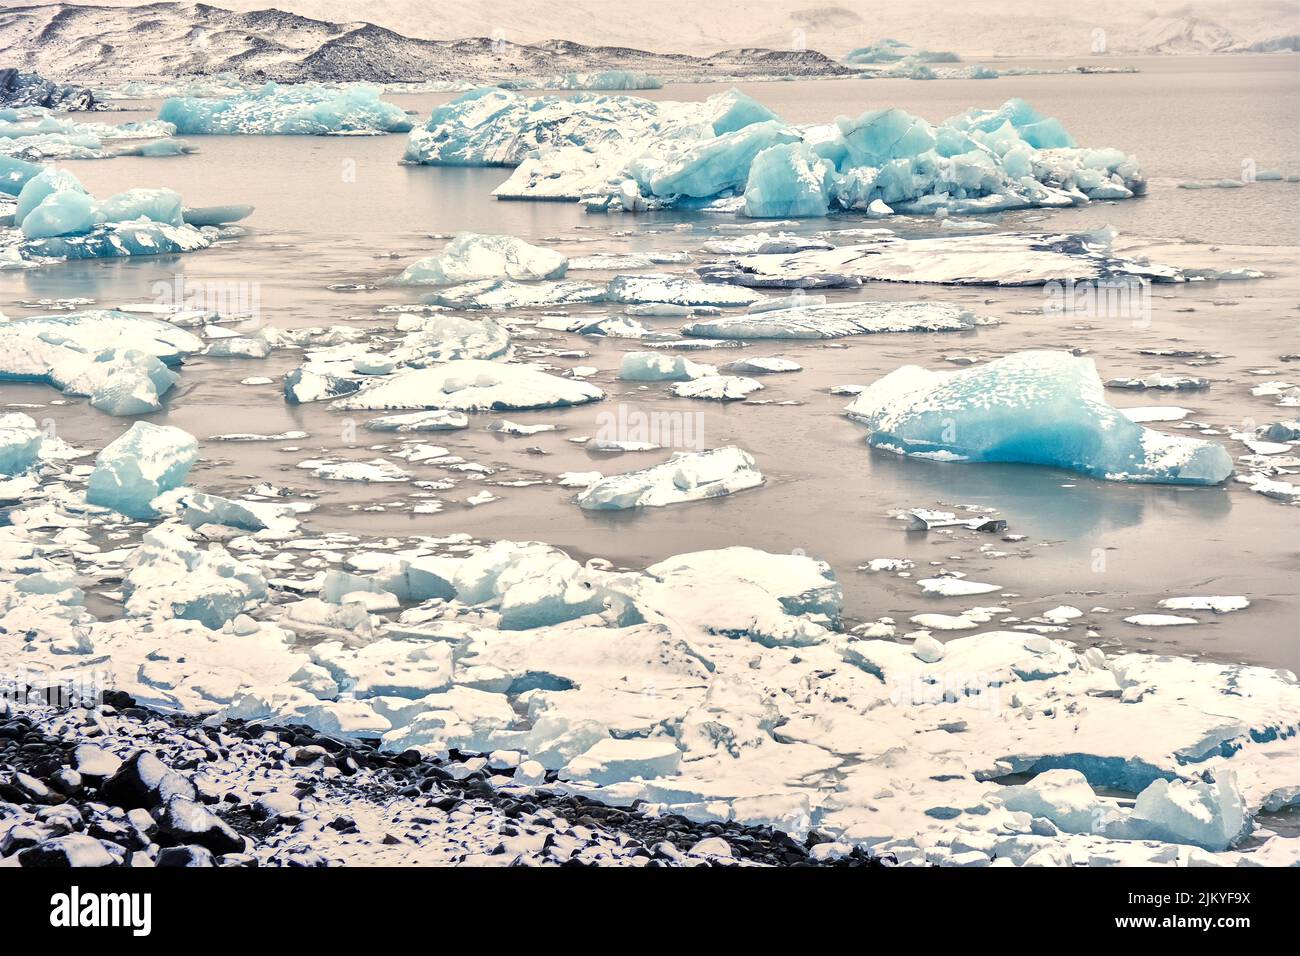 Vista grandangolare del Lago del Ghiacciaio Fjallsarlon, Islanda, con molti iceberg galleggianti Foto Stock